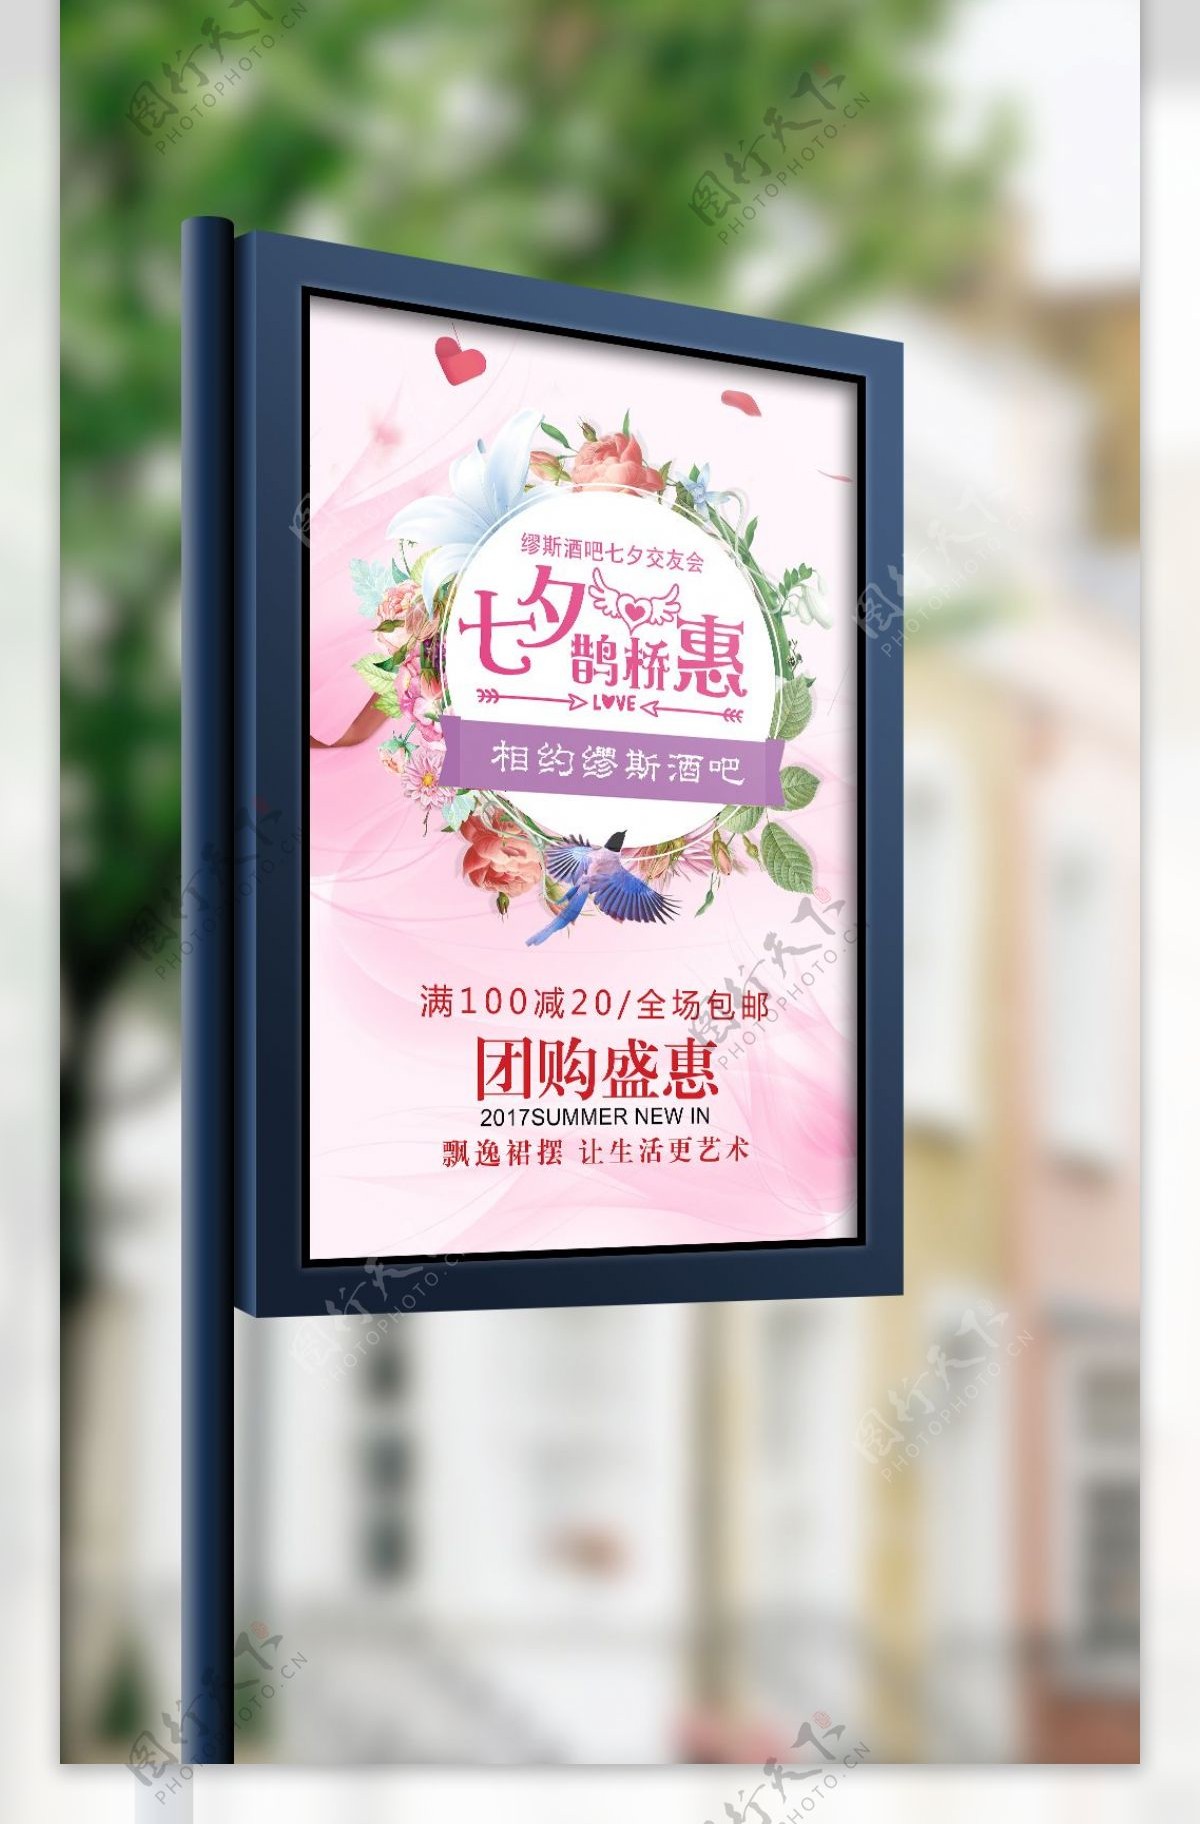 粉红色情人节七夕海报模板